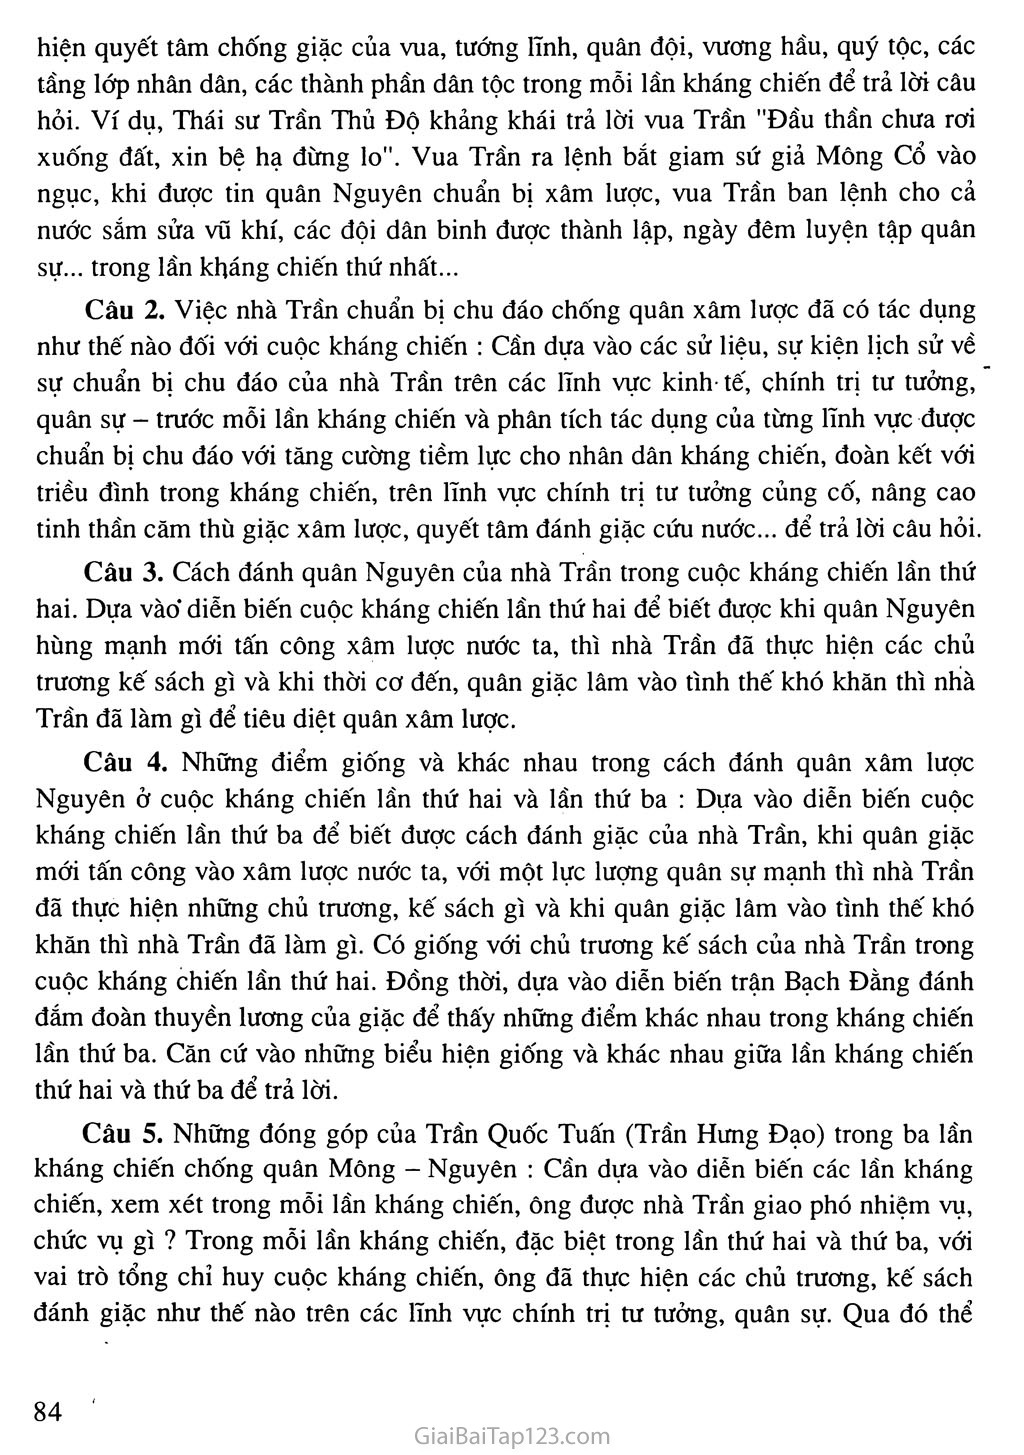 Bài 14: Ba lần kháng chiến chống quân xâm lược Mông - Nguyên (thế kỉ XIII) trang 6